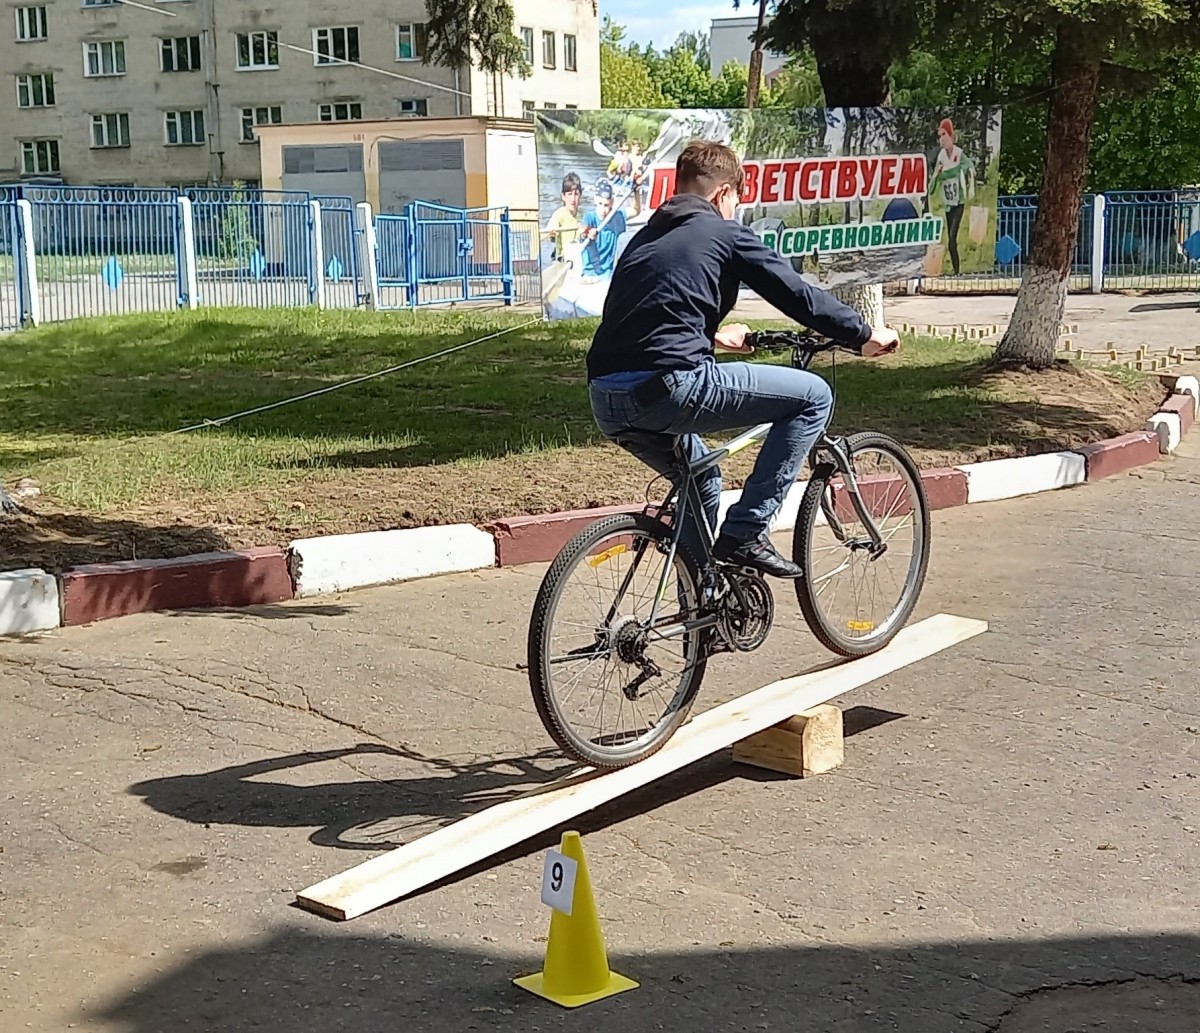 Соревнования по фигурному вождению велосипеда. Бобруйск